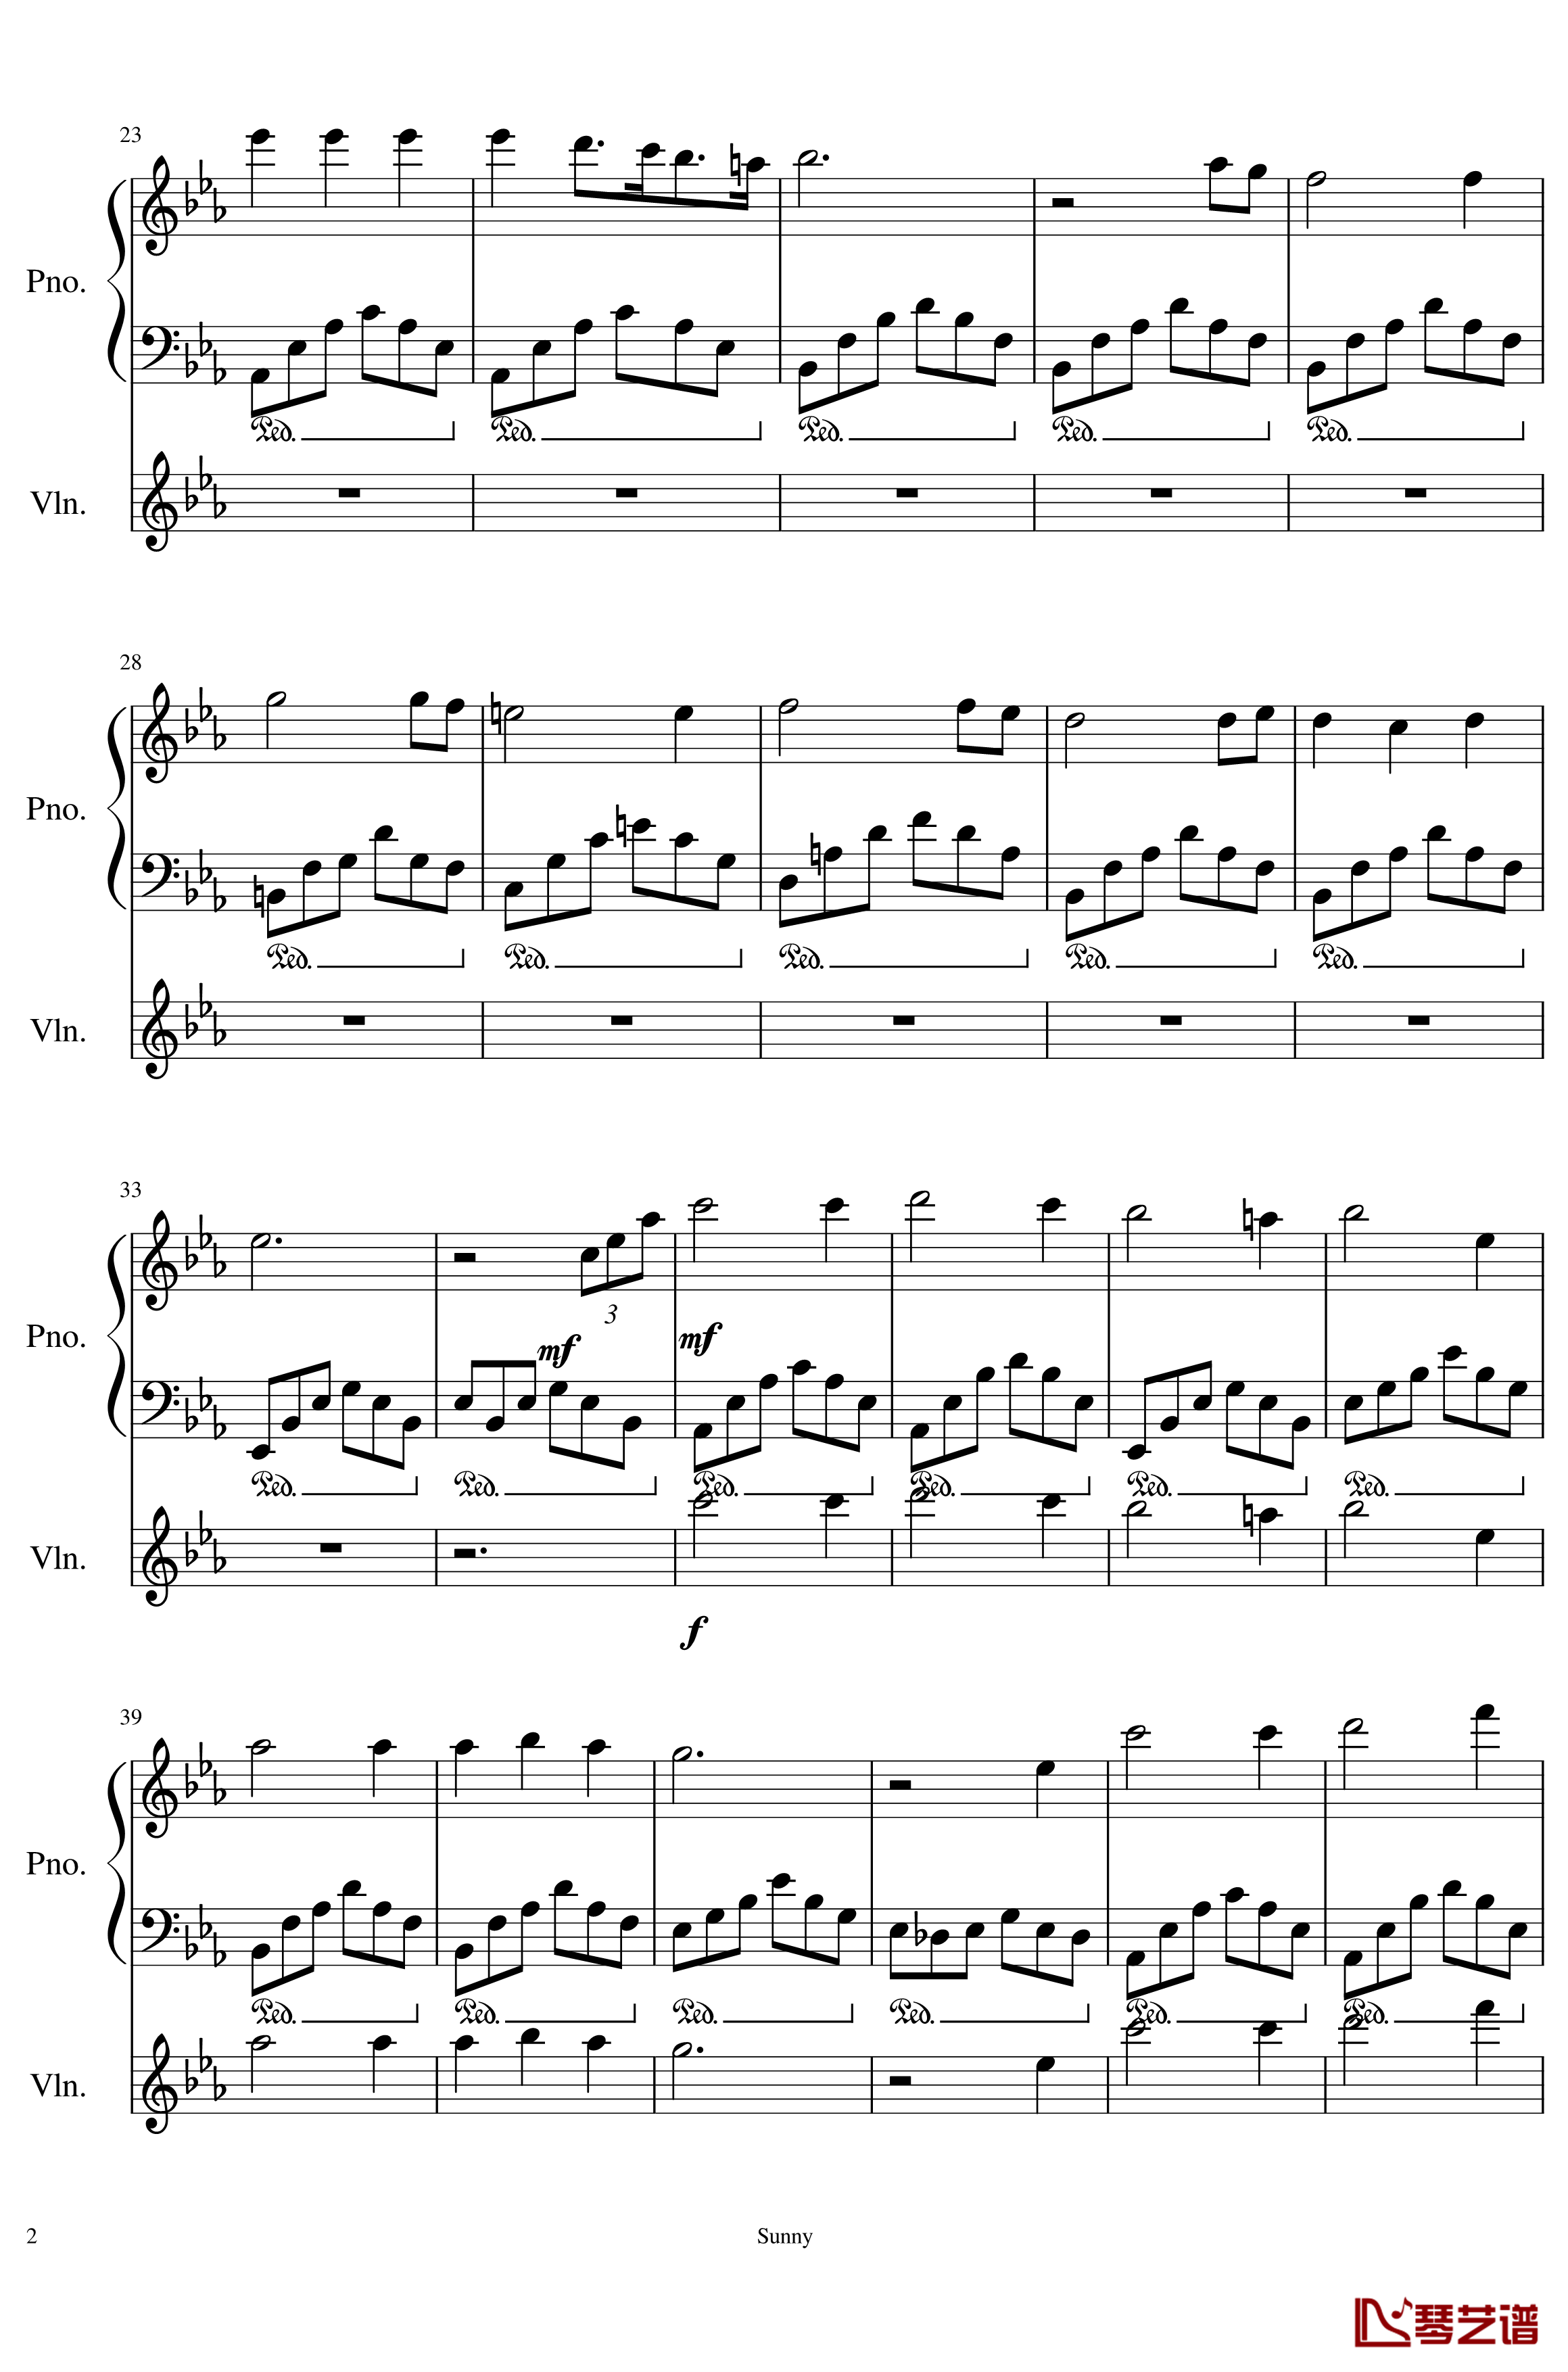 Op.1-1 钢琴谱-My First Music-SunnyAK472